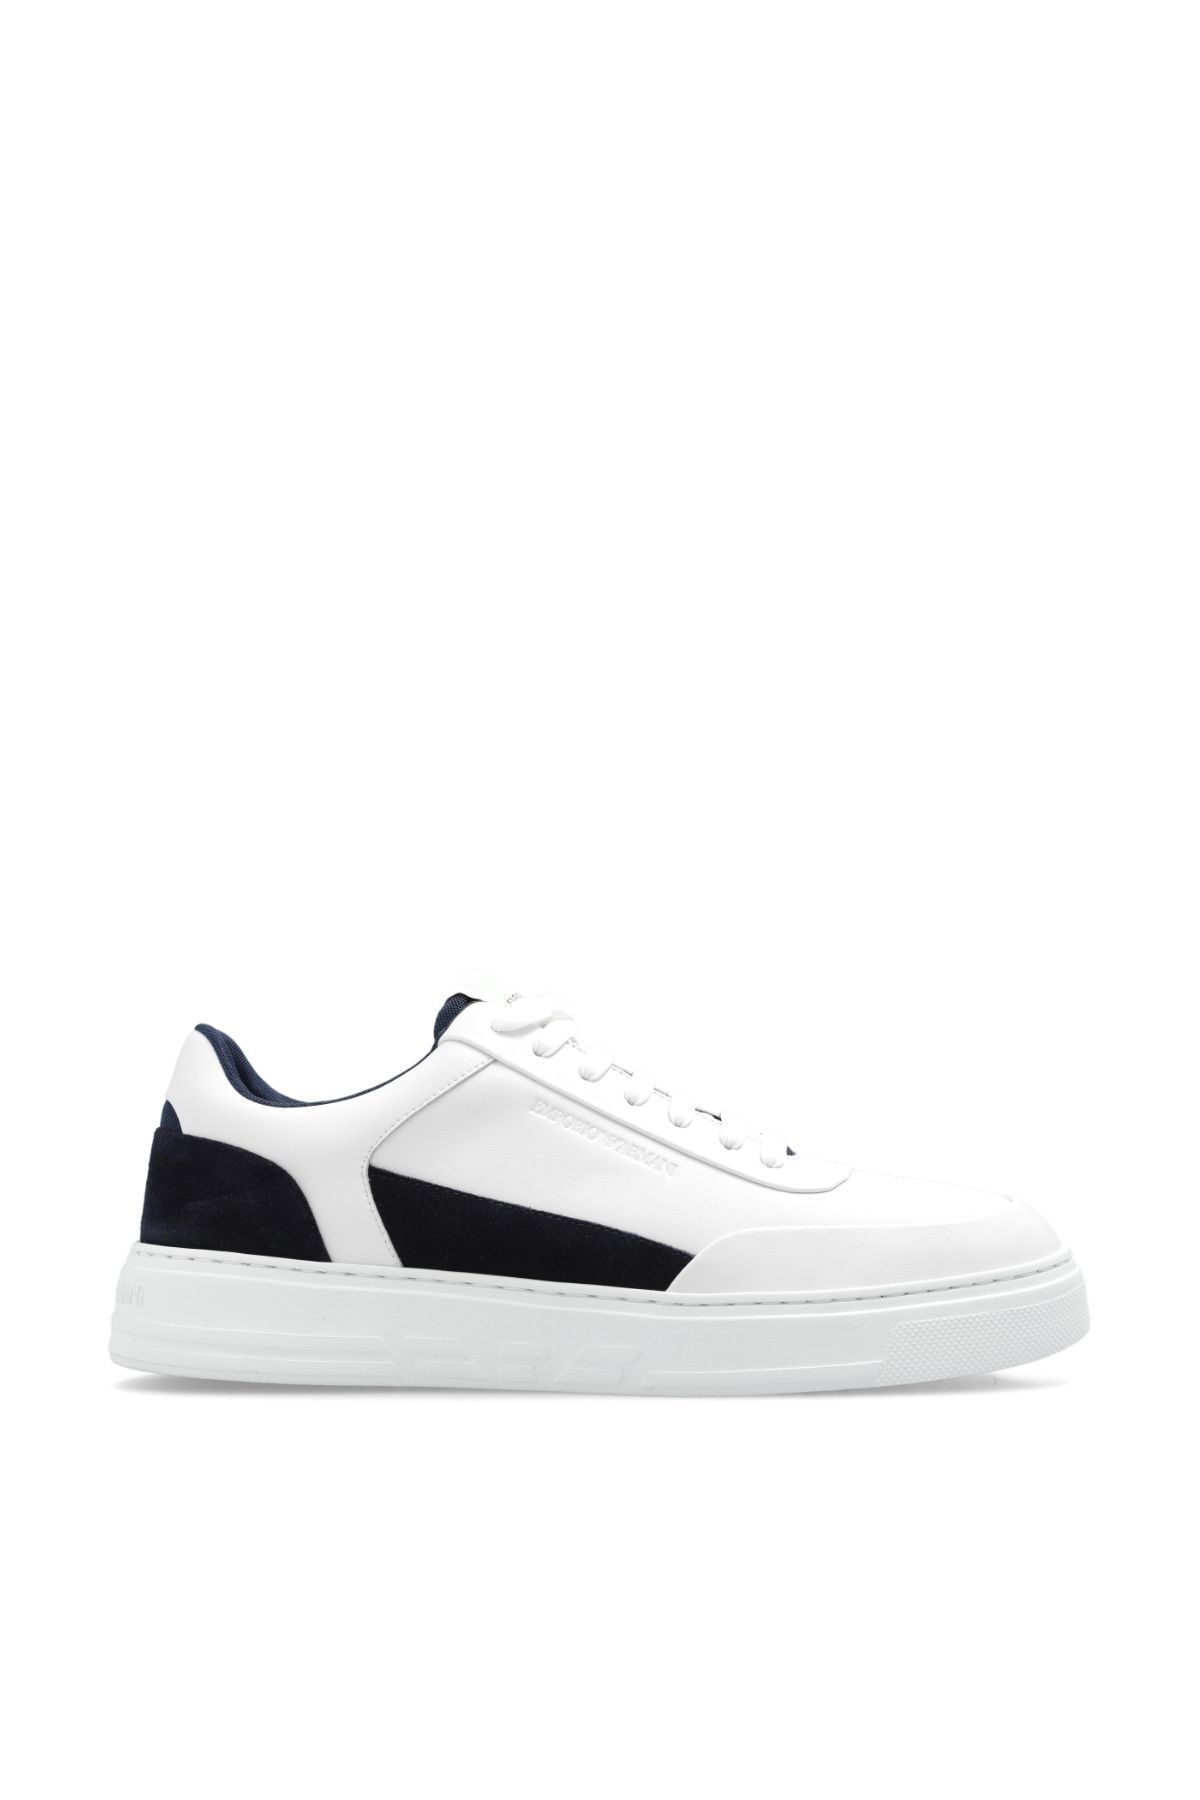 Emporio Armani Erkek Marka Logolu Bağcıklı Kaydırmaz Tabanlı Günlük Beyaz-Siyah Sneaker X4X645 XN958-T437